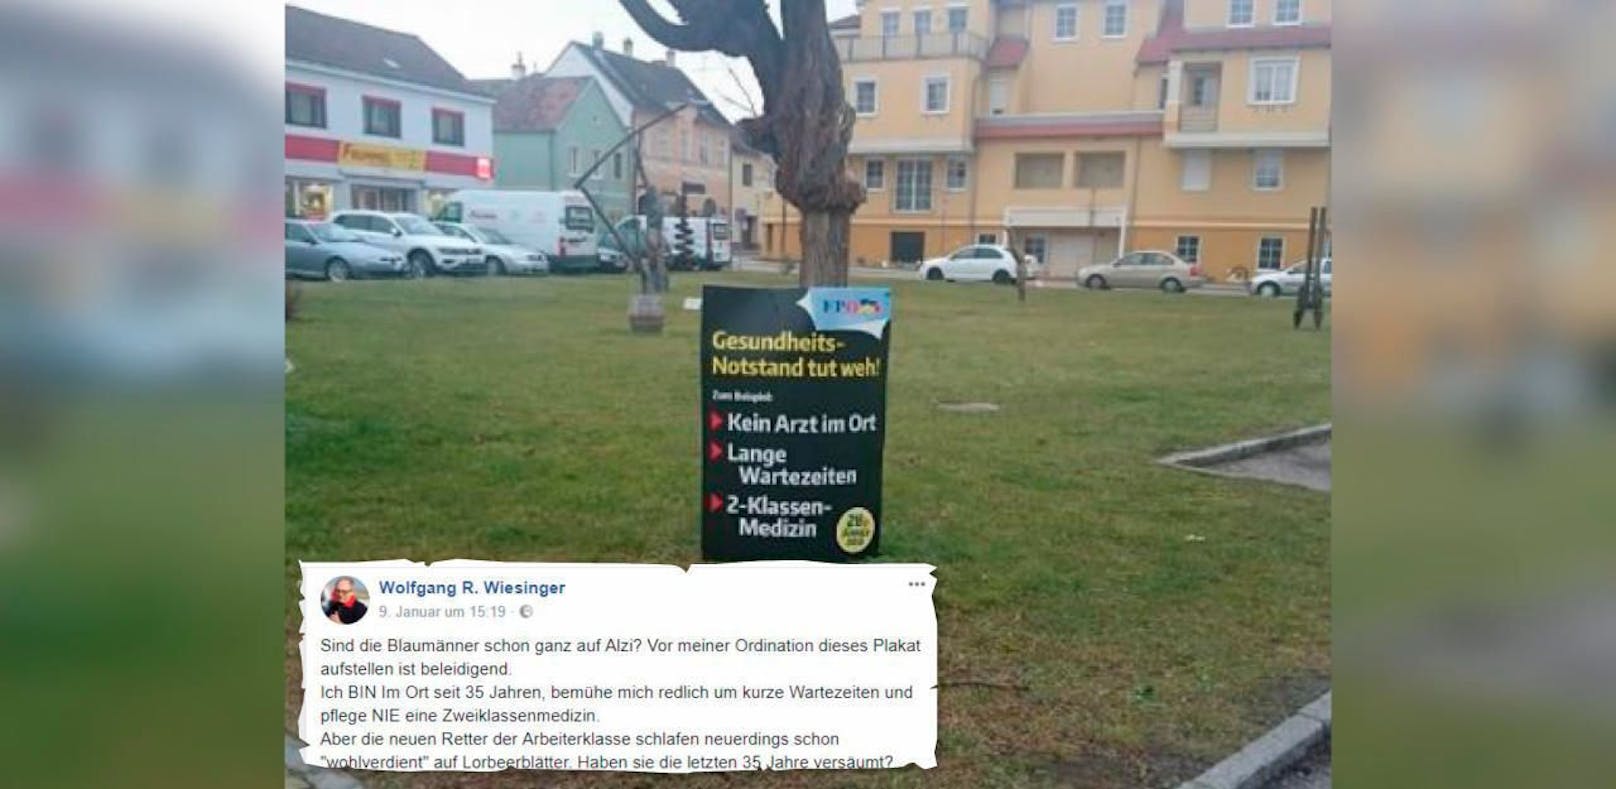 Arzt über FP-Plakat: "Sind Blaumänner auf Alzi?"